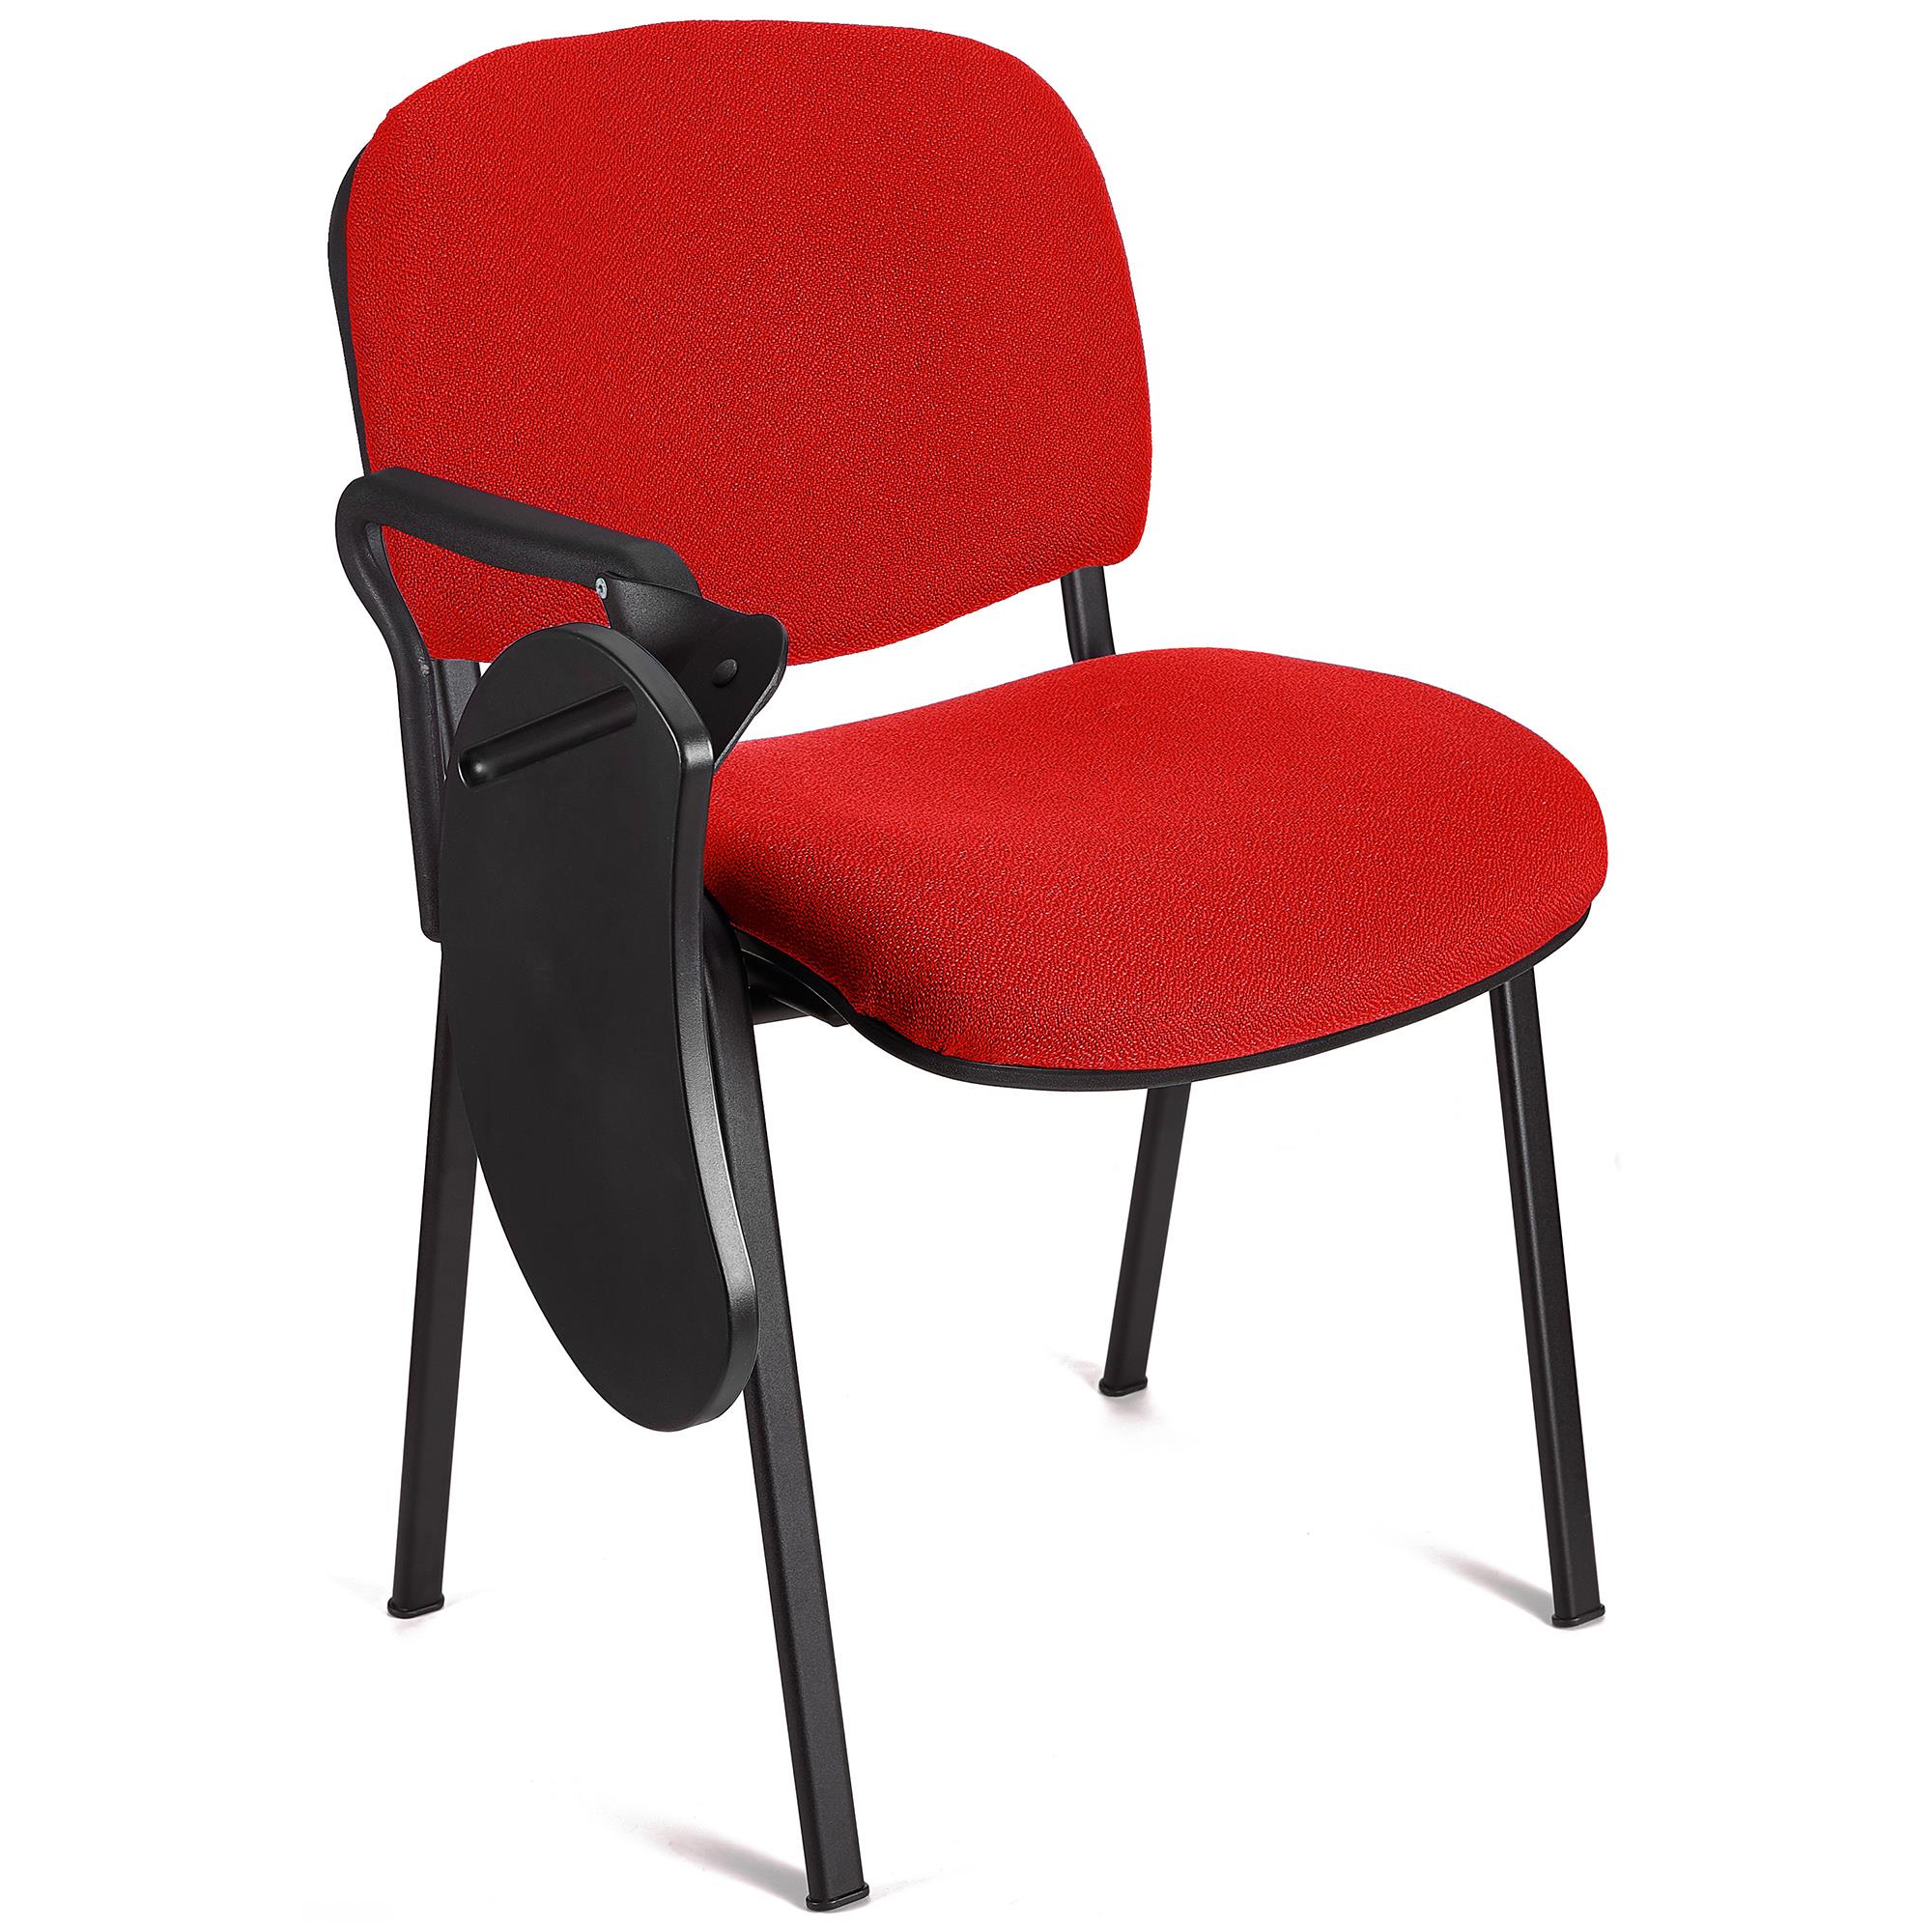 Konferenzstuhl MOBY mit klappbarem Schreibbrett, stapelbar und praktisch, schwarzes Gestell, Farbe Rot